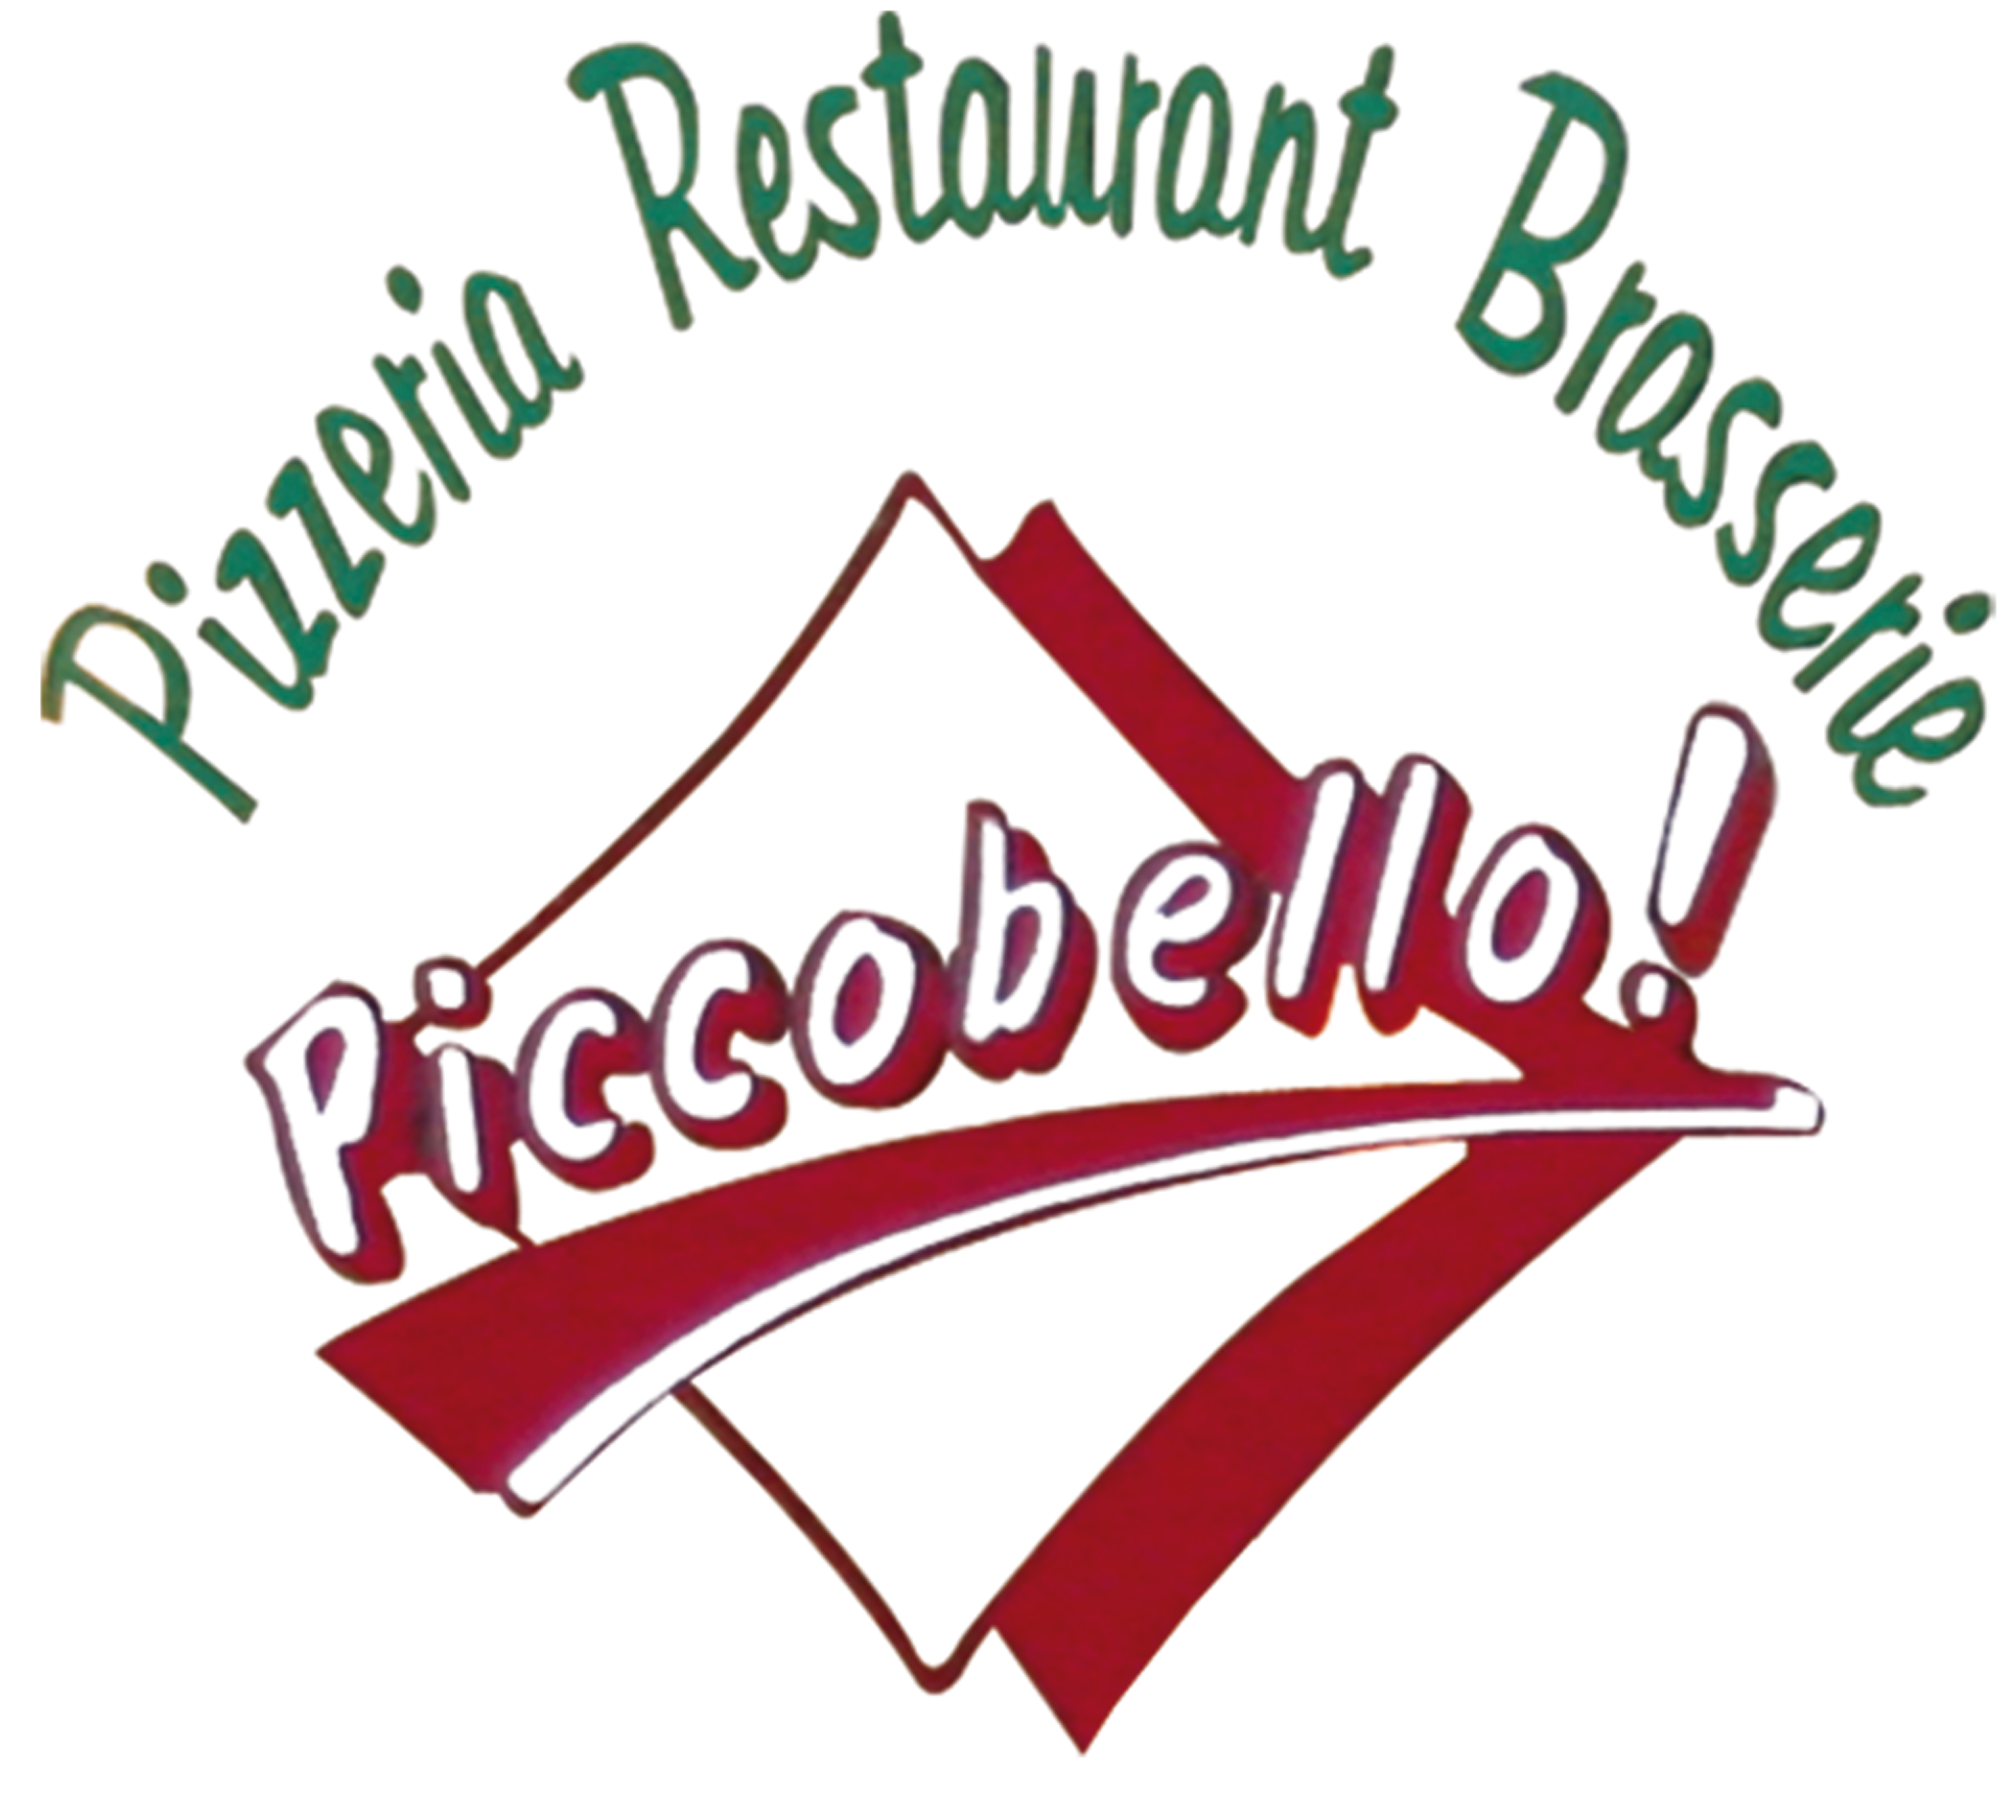 Logo Le piccobello